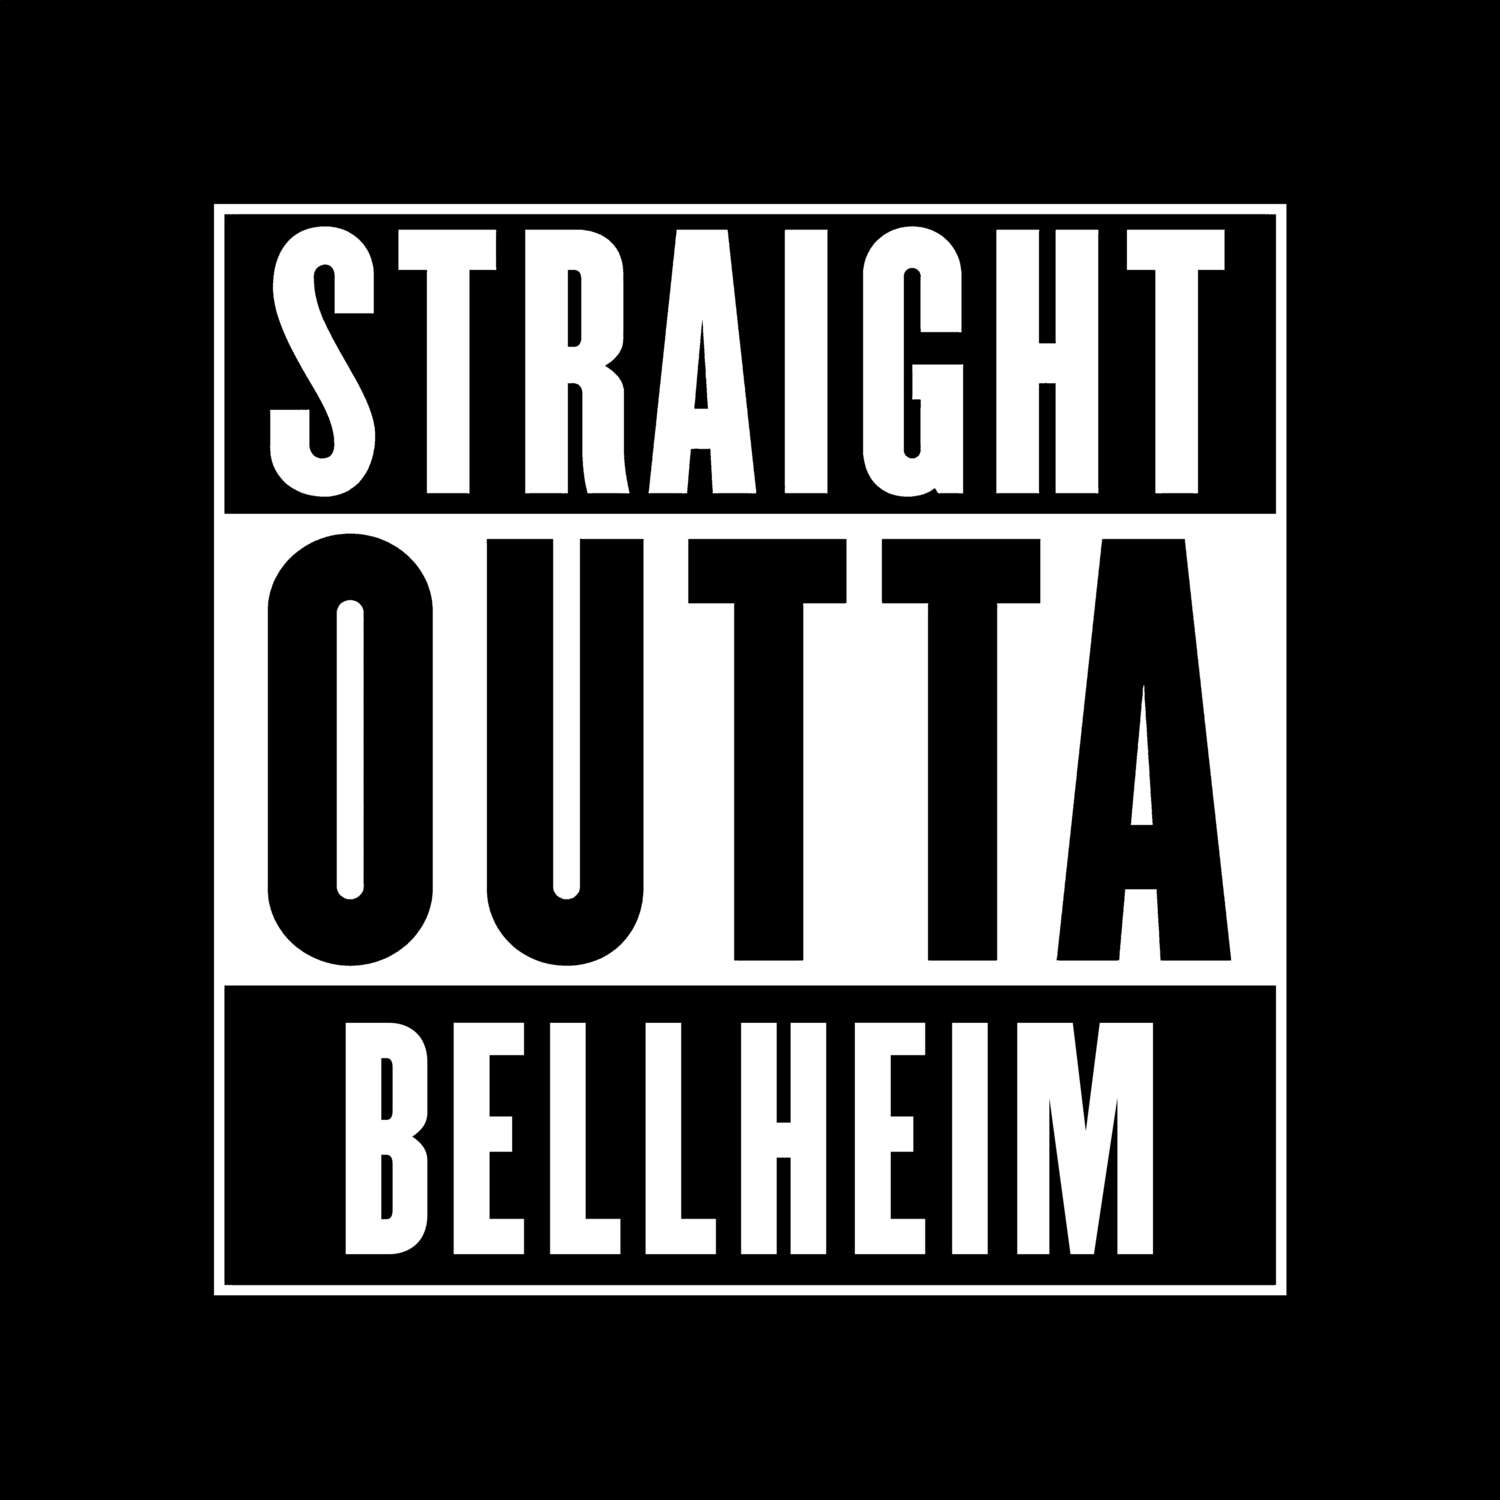 Bellheim T-Shirt »Straight Outta«